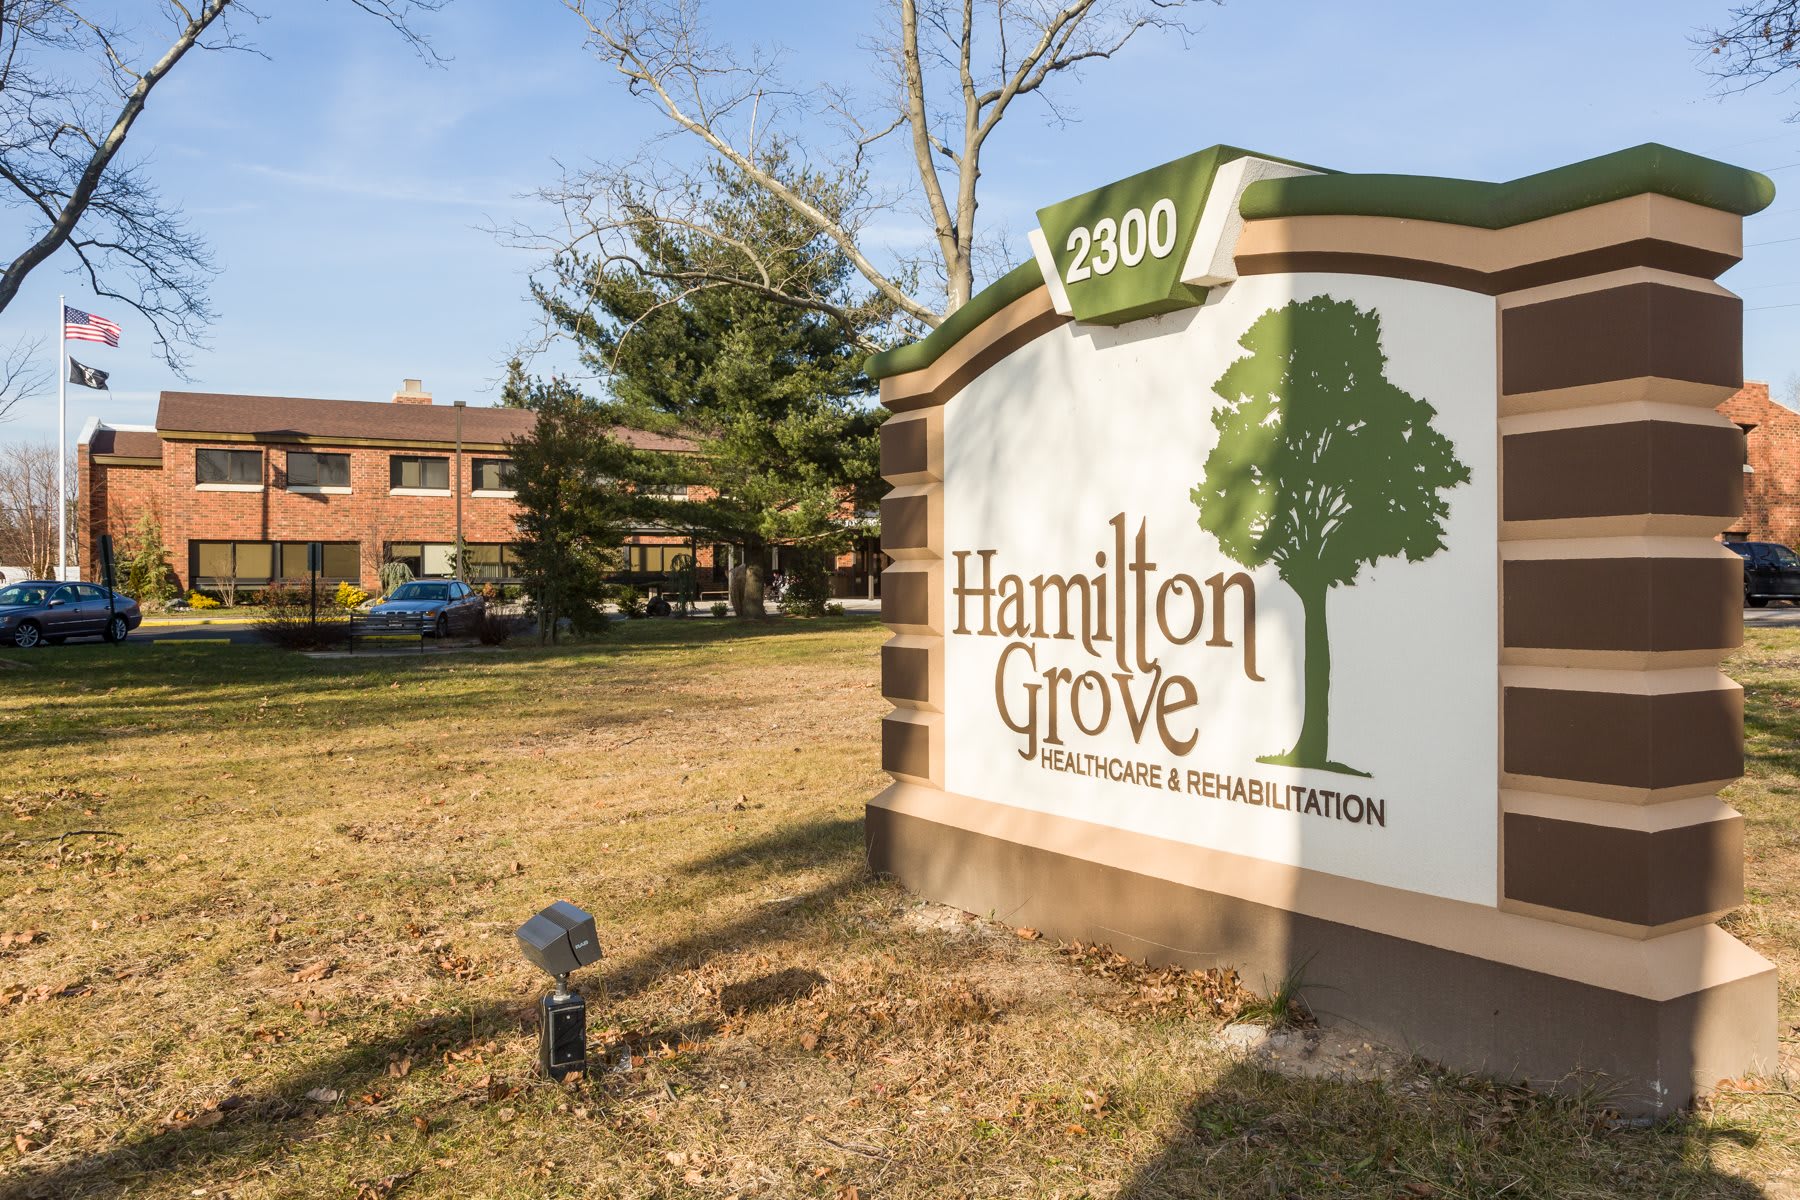 Hamilton Grove Rehabilitation and Healthcare